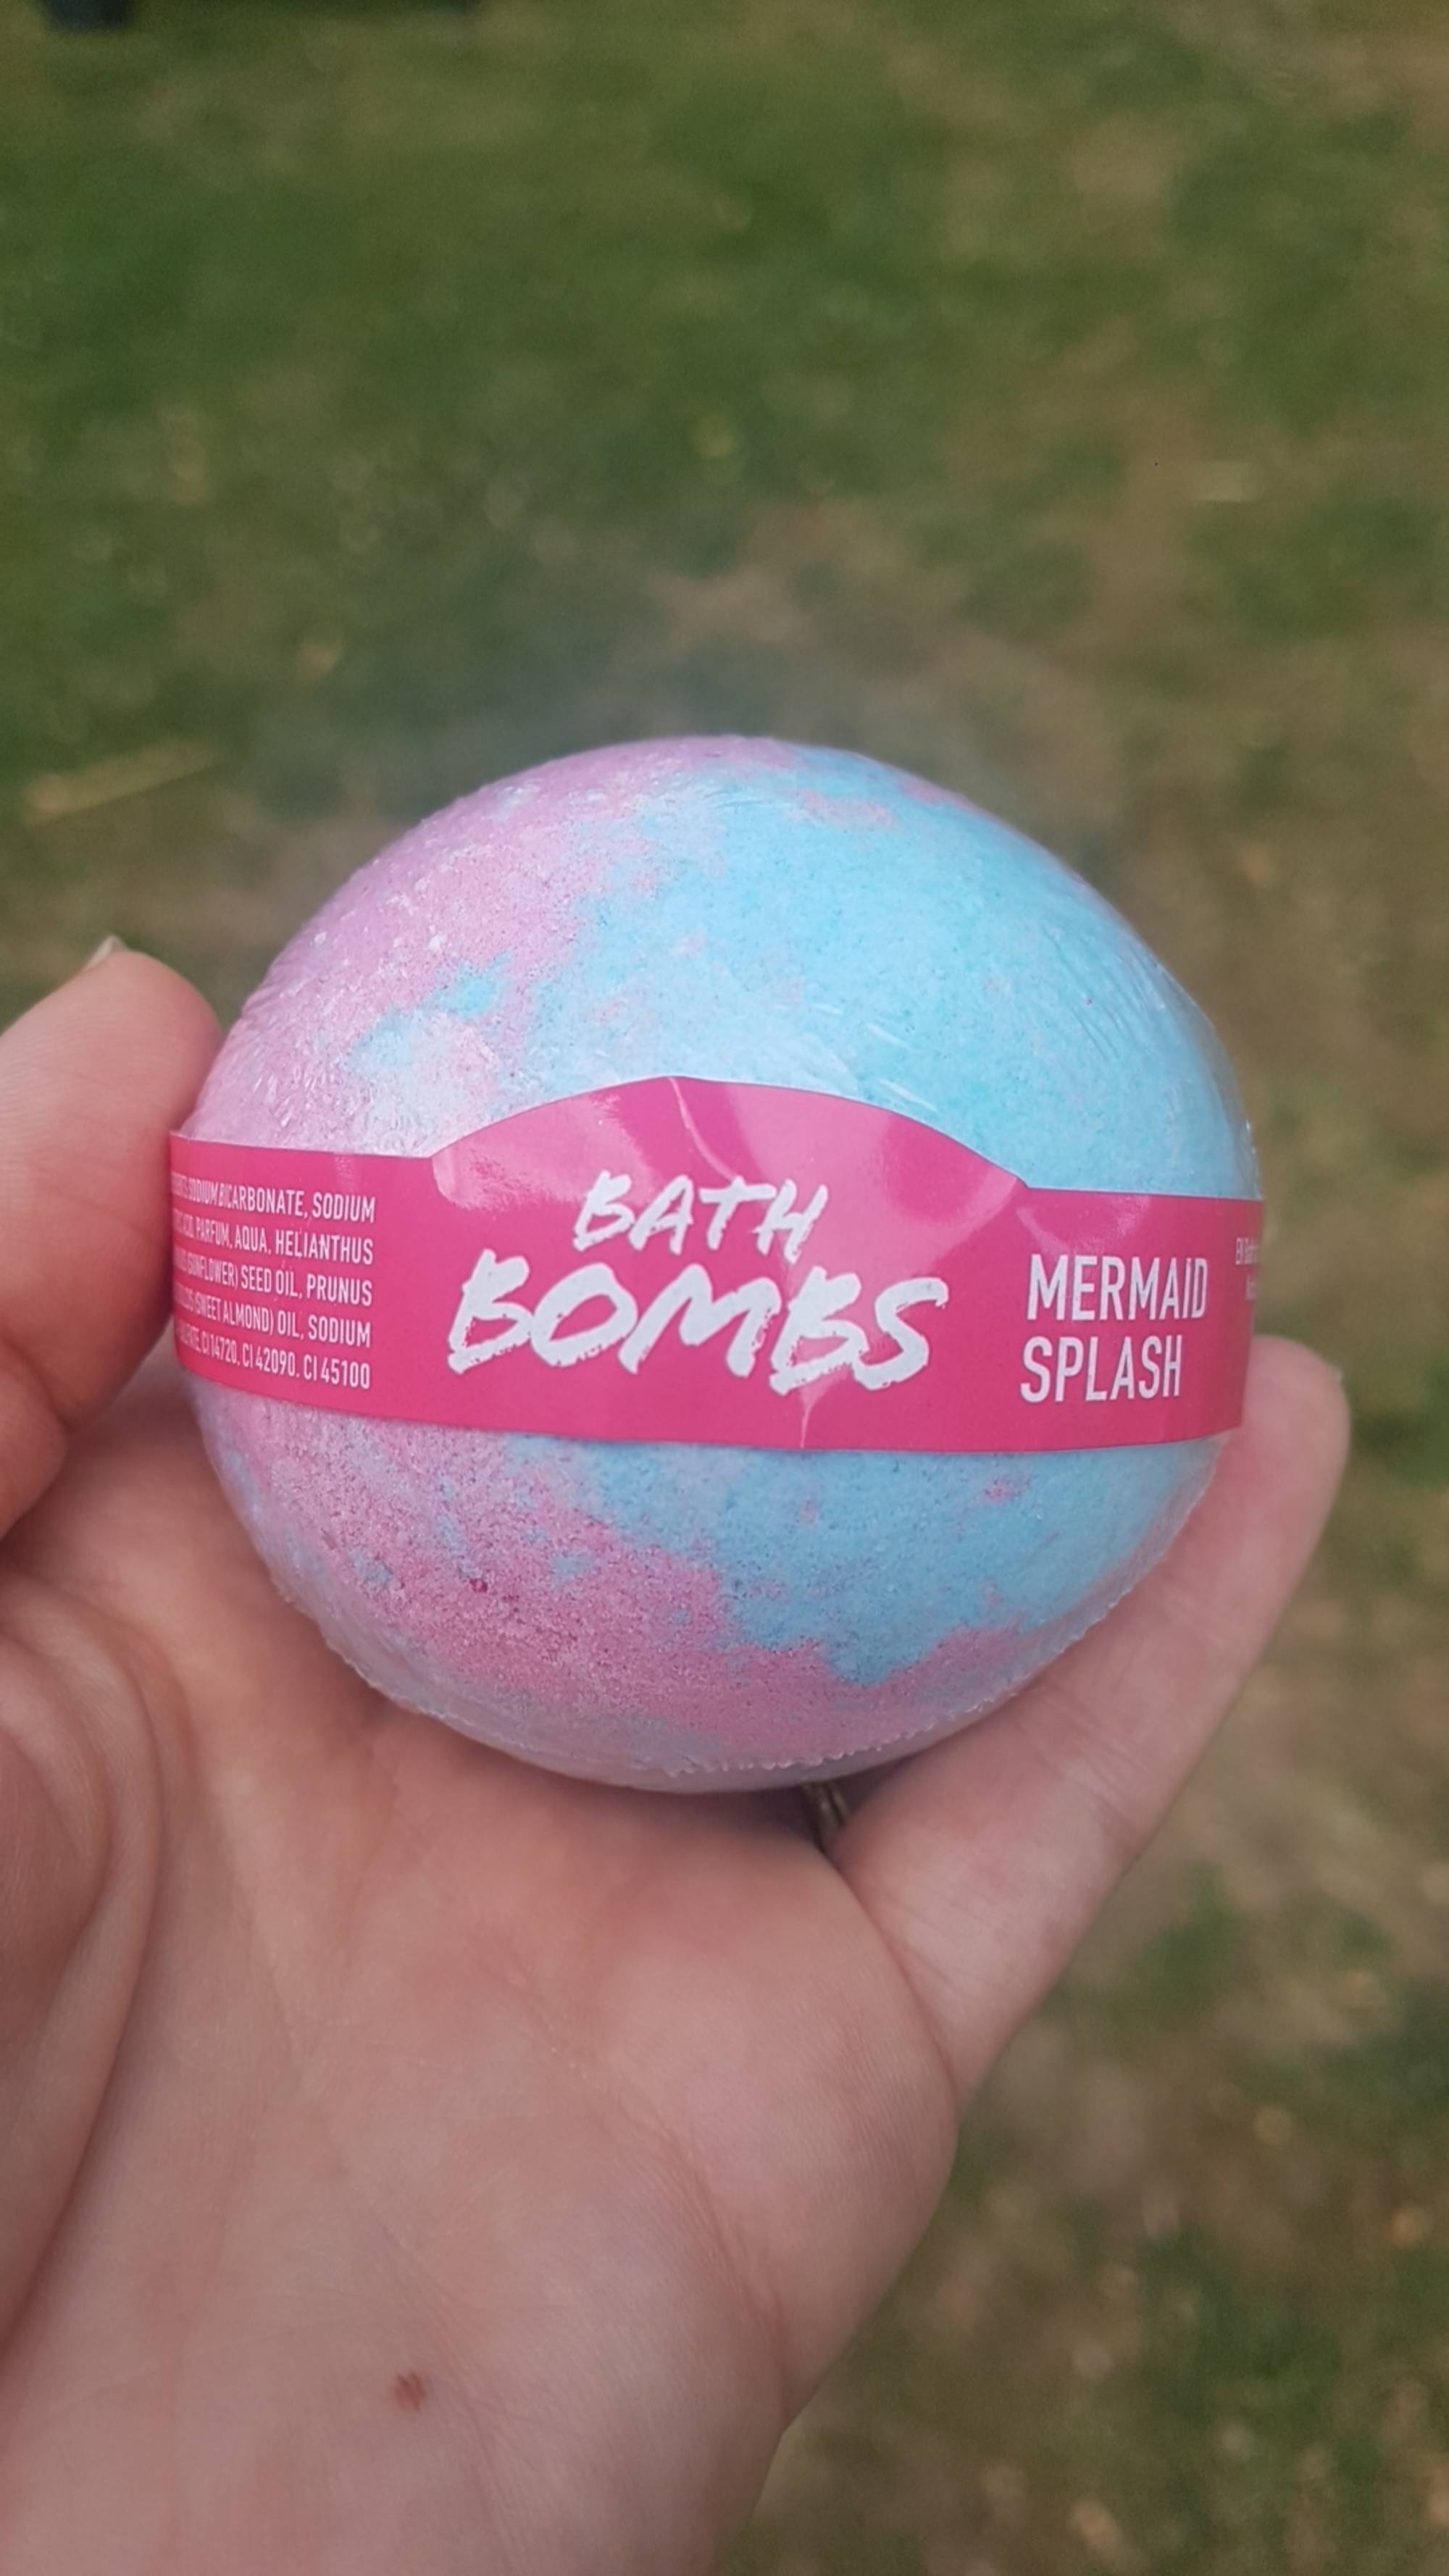 MERMAID SPLASH - Bath bombs